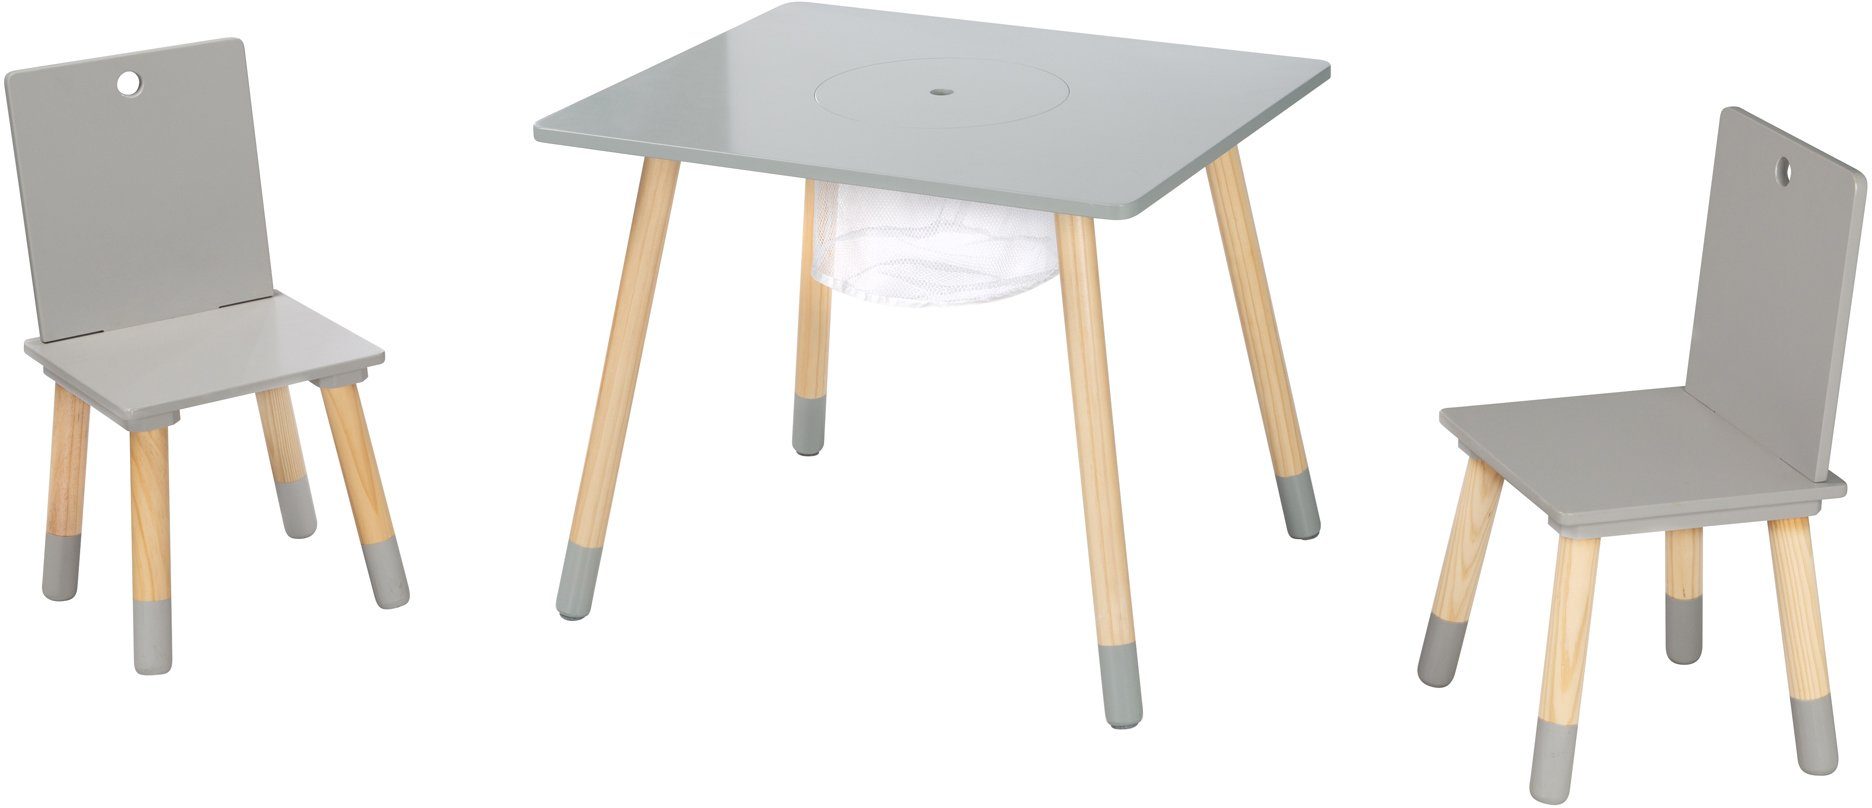 roba® Kindersitzgruppe Sitzgruppe mit Aufbewahrungsnetz, Holz grau, aus